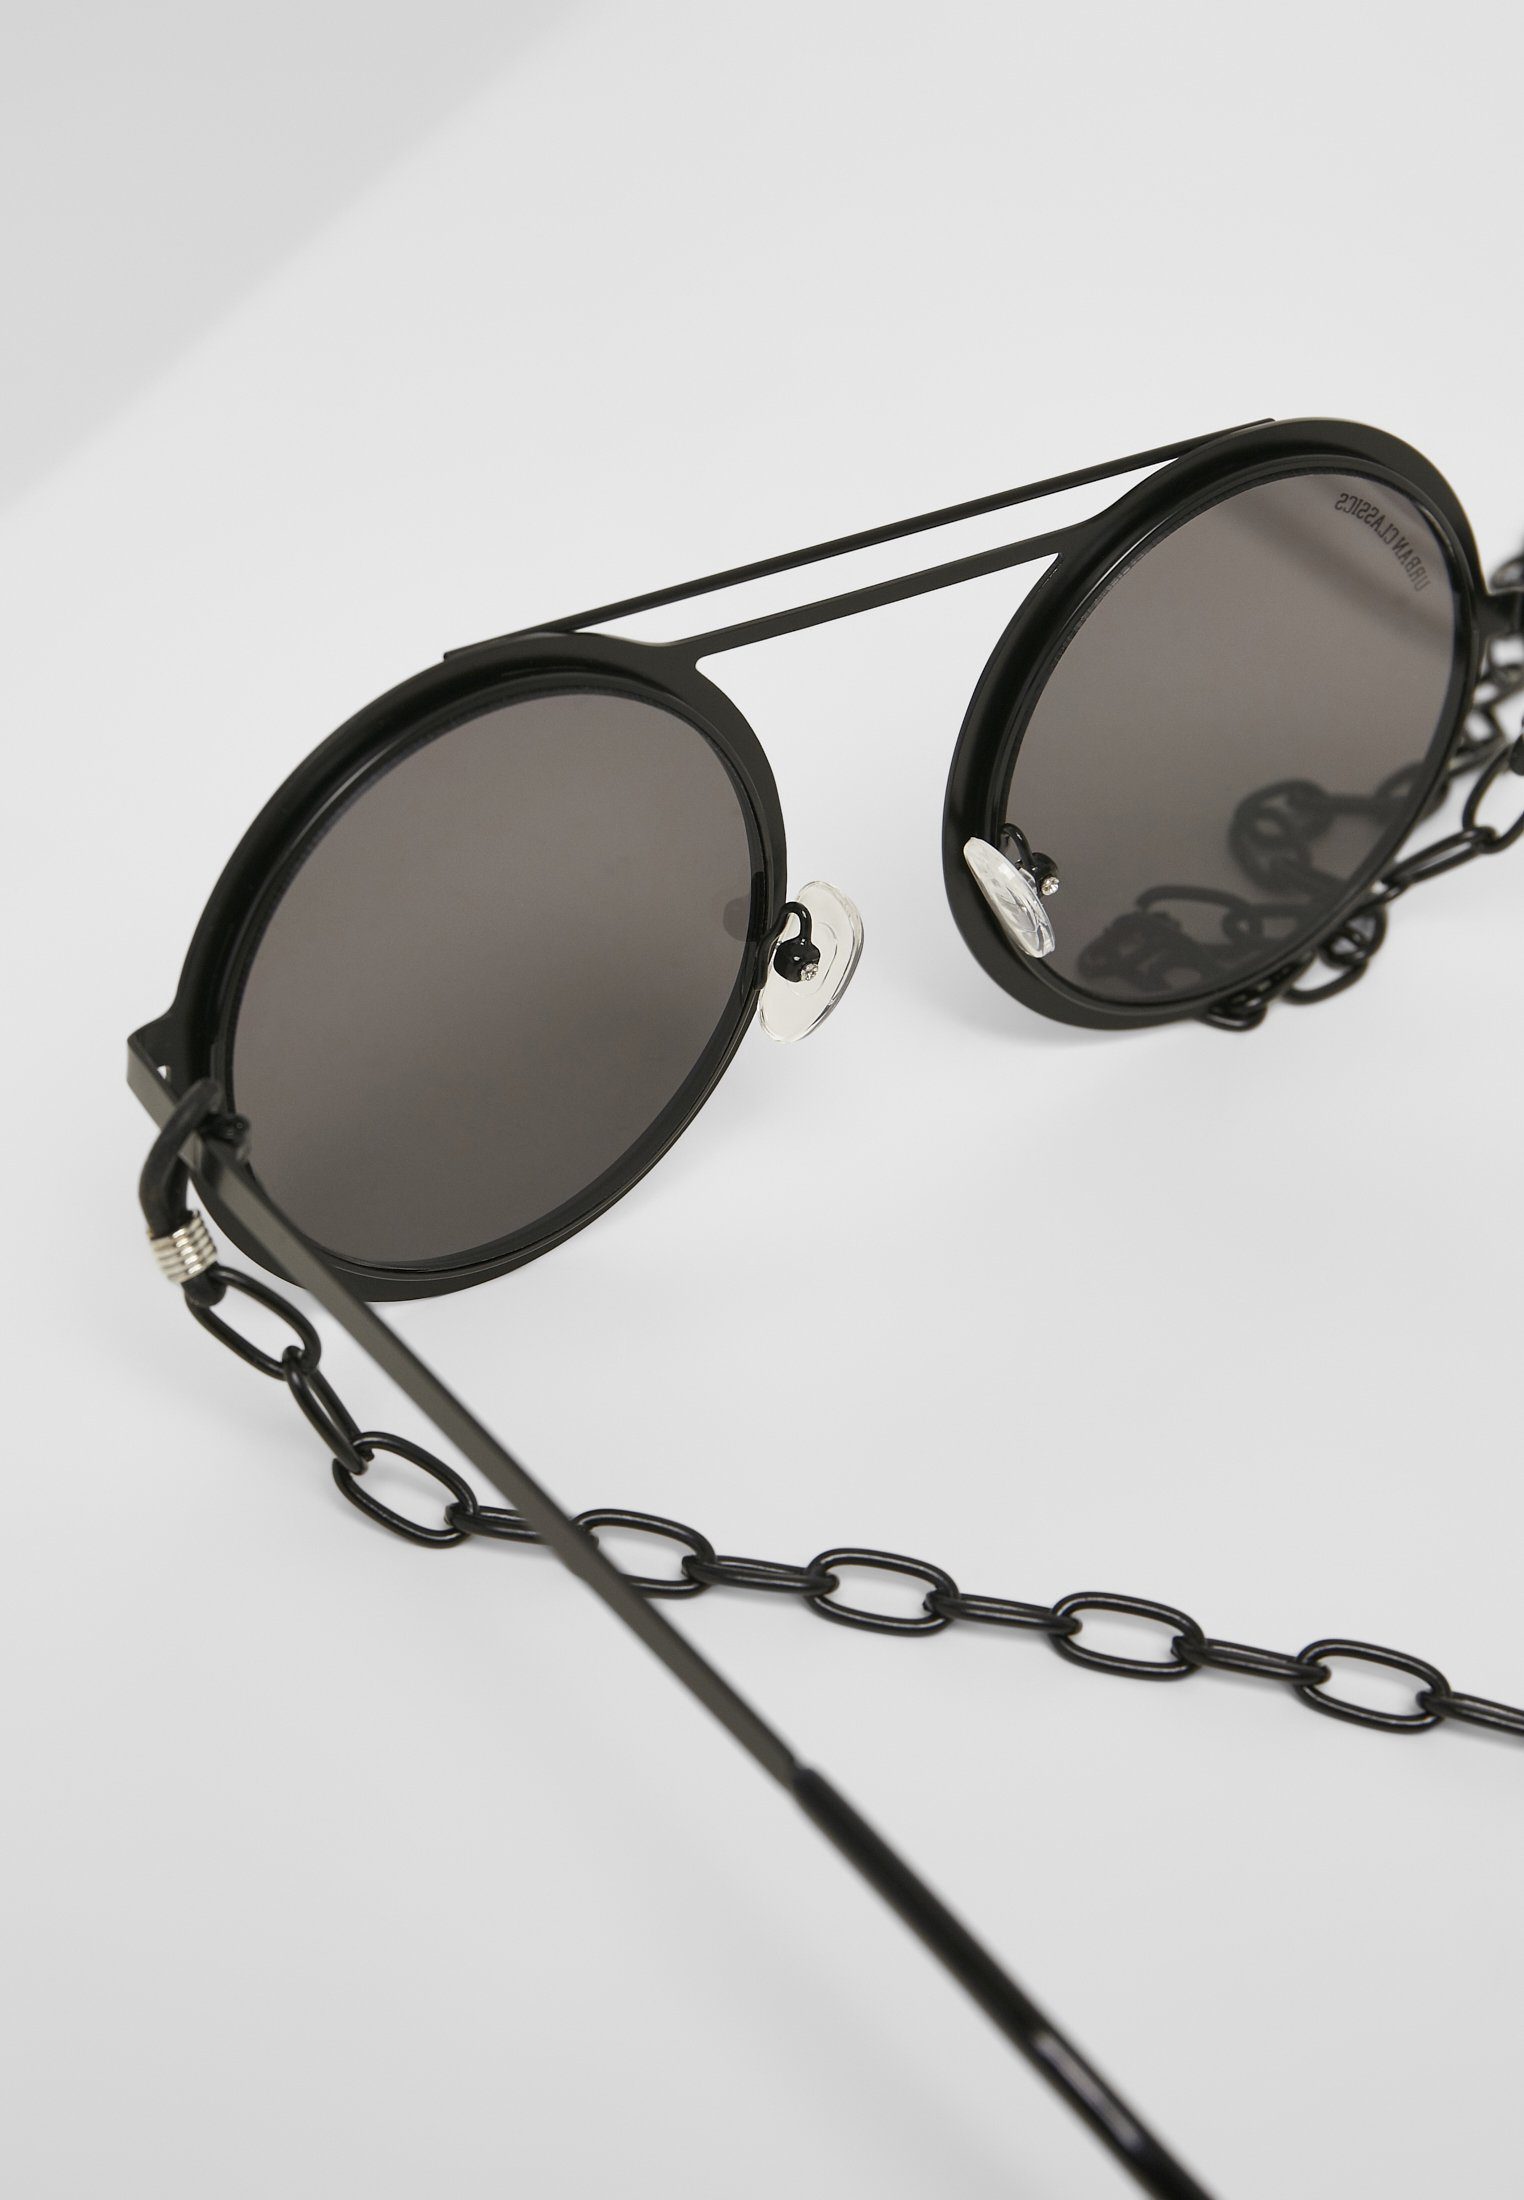 Unisex 104 Sonnenbrille URBAN Chain CLASSICS silver mirror/black Sunglasses